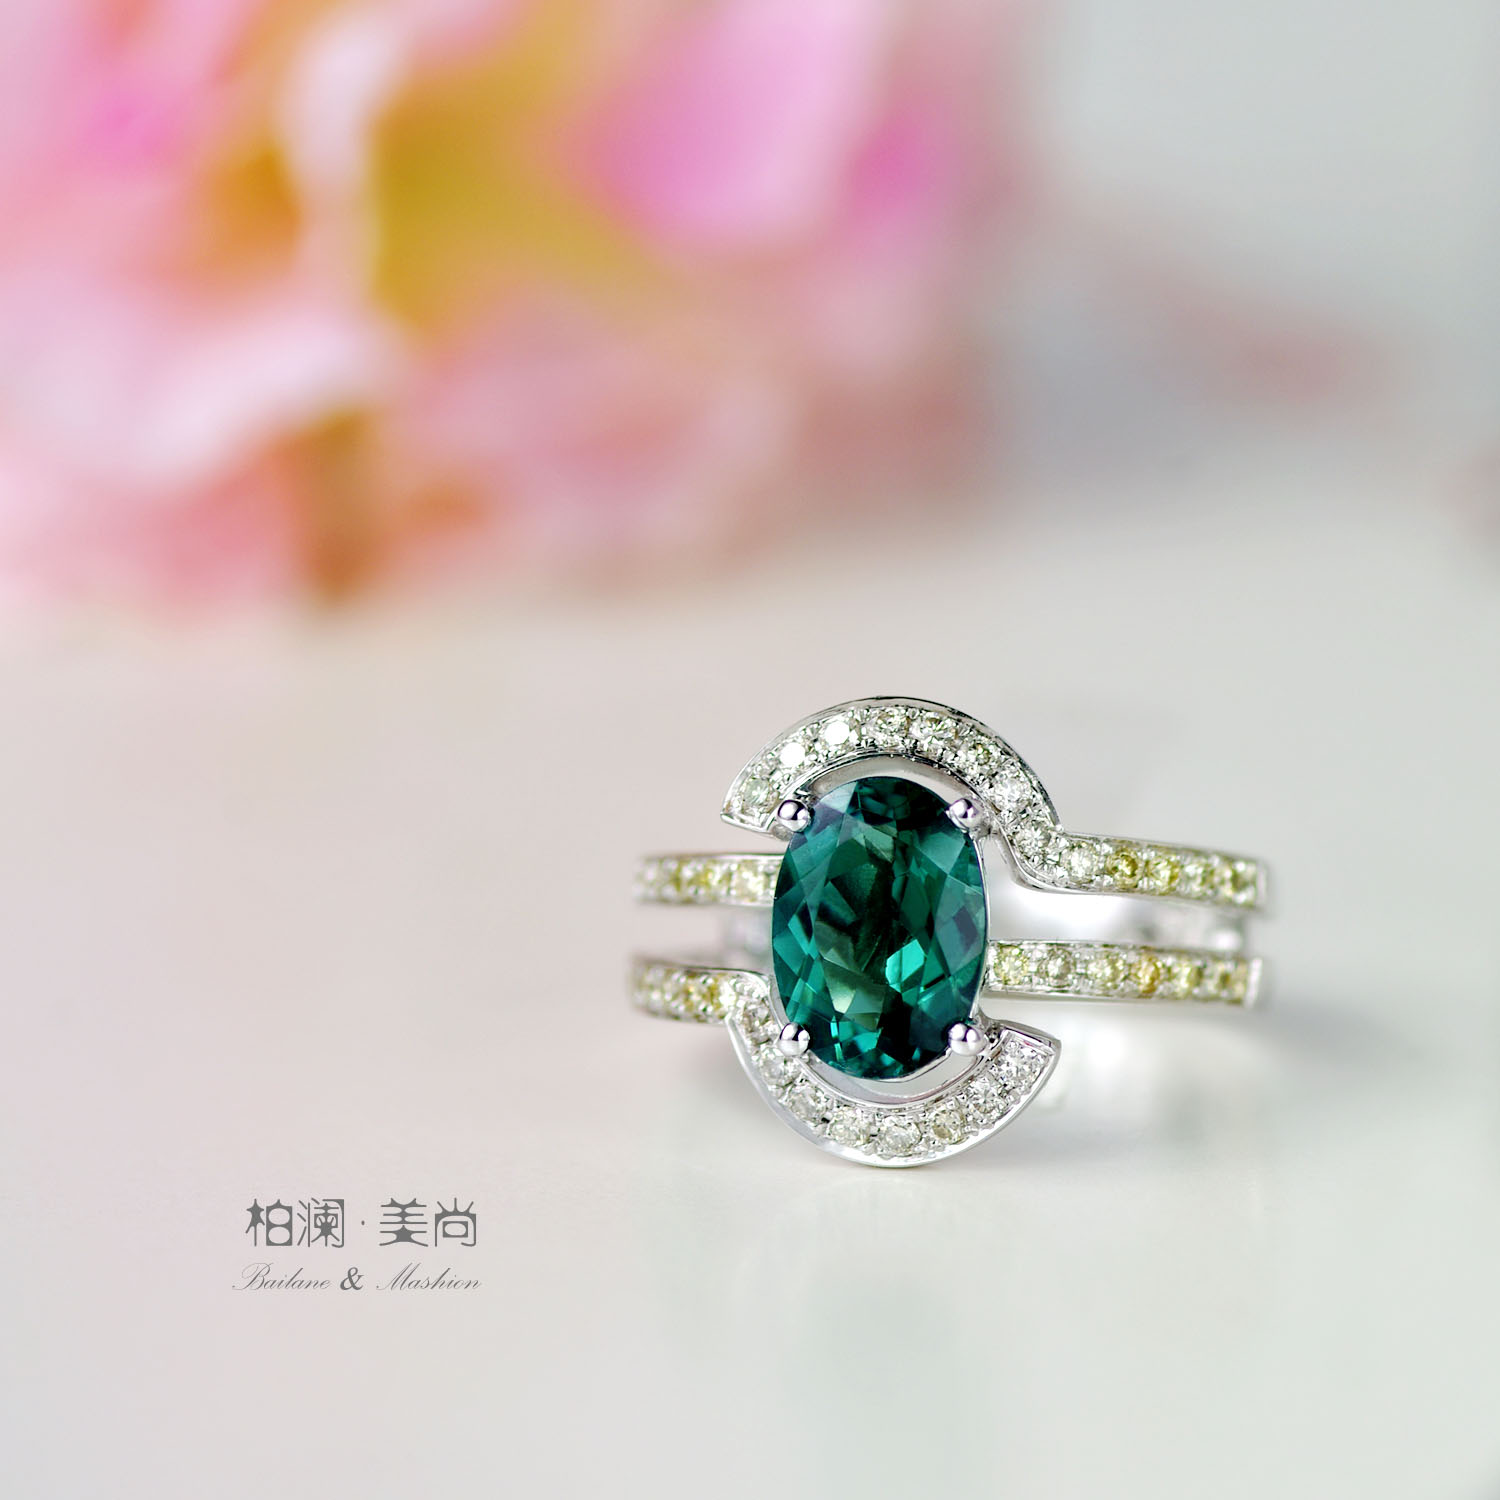 【柏澜美尚】天然绿色碧玺镶钻18K白金戒指